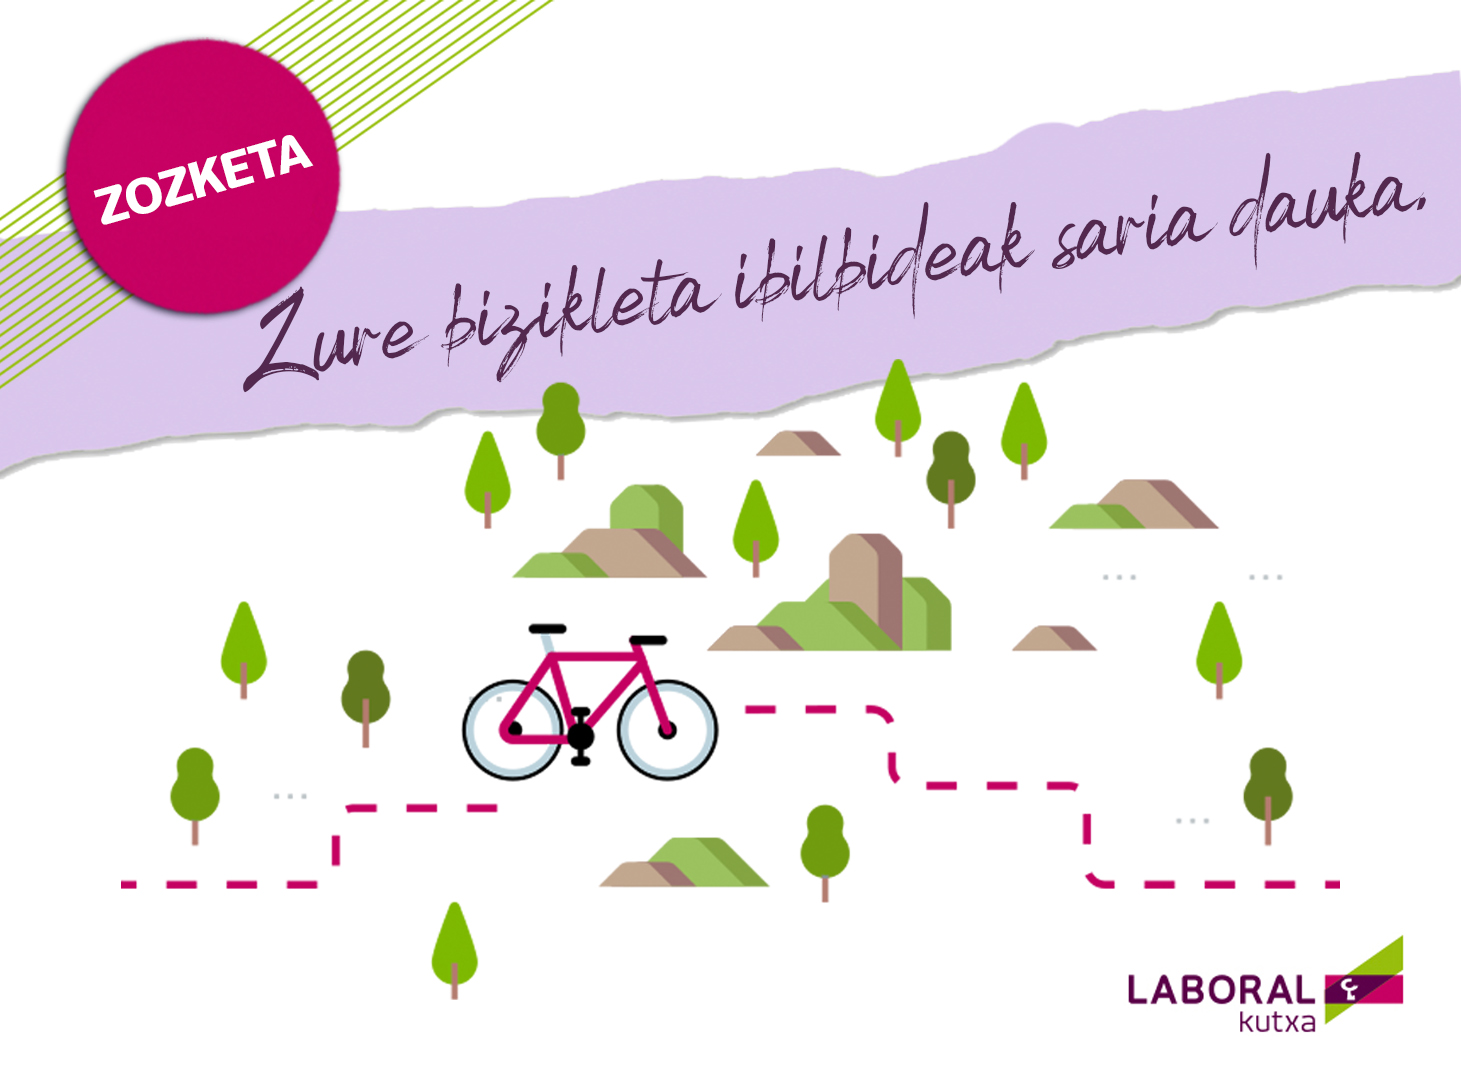 Mándanos tu ruta favorita por Guipúzcoa y gana una estupenda equipación ciclista de Laboral Kutxa